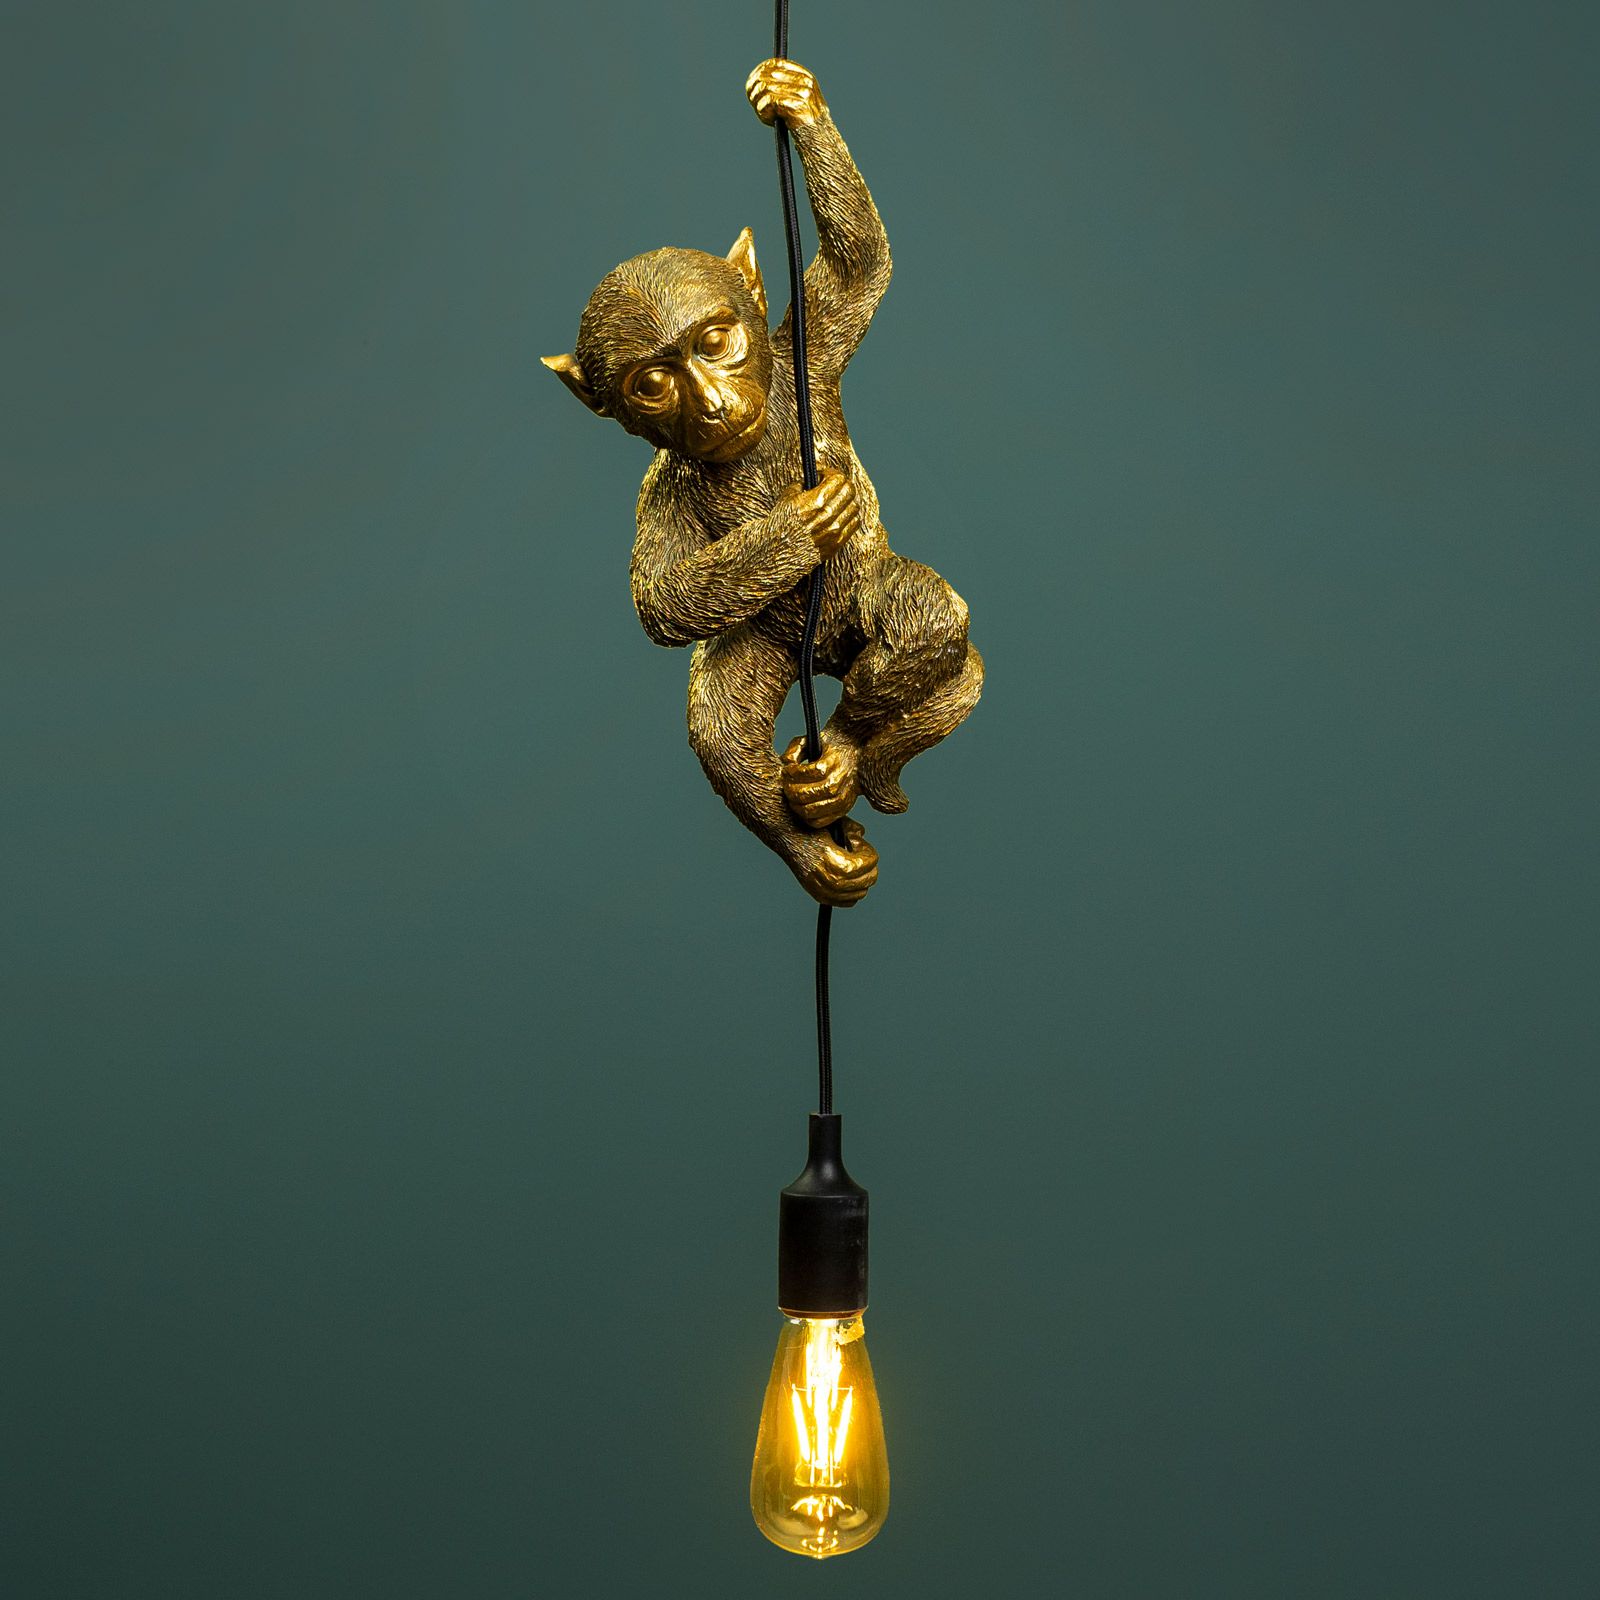 Design RGB LED Decken Leuchte Tier Affen Glas Spiel Zimmer Lampe FERNBEDIENUNG 